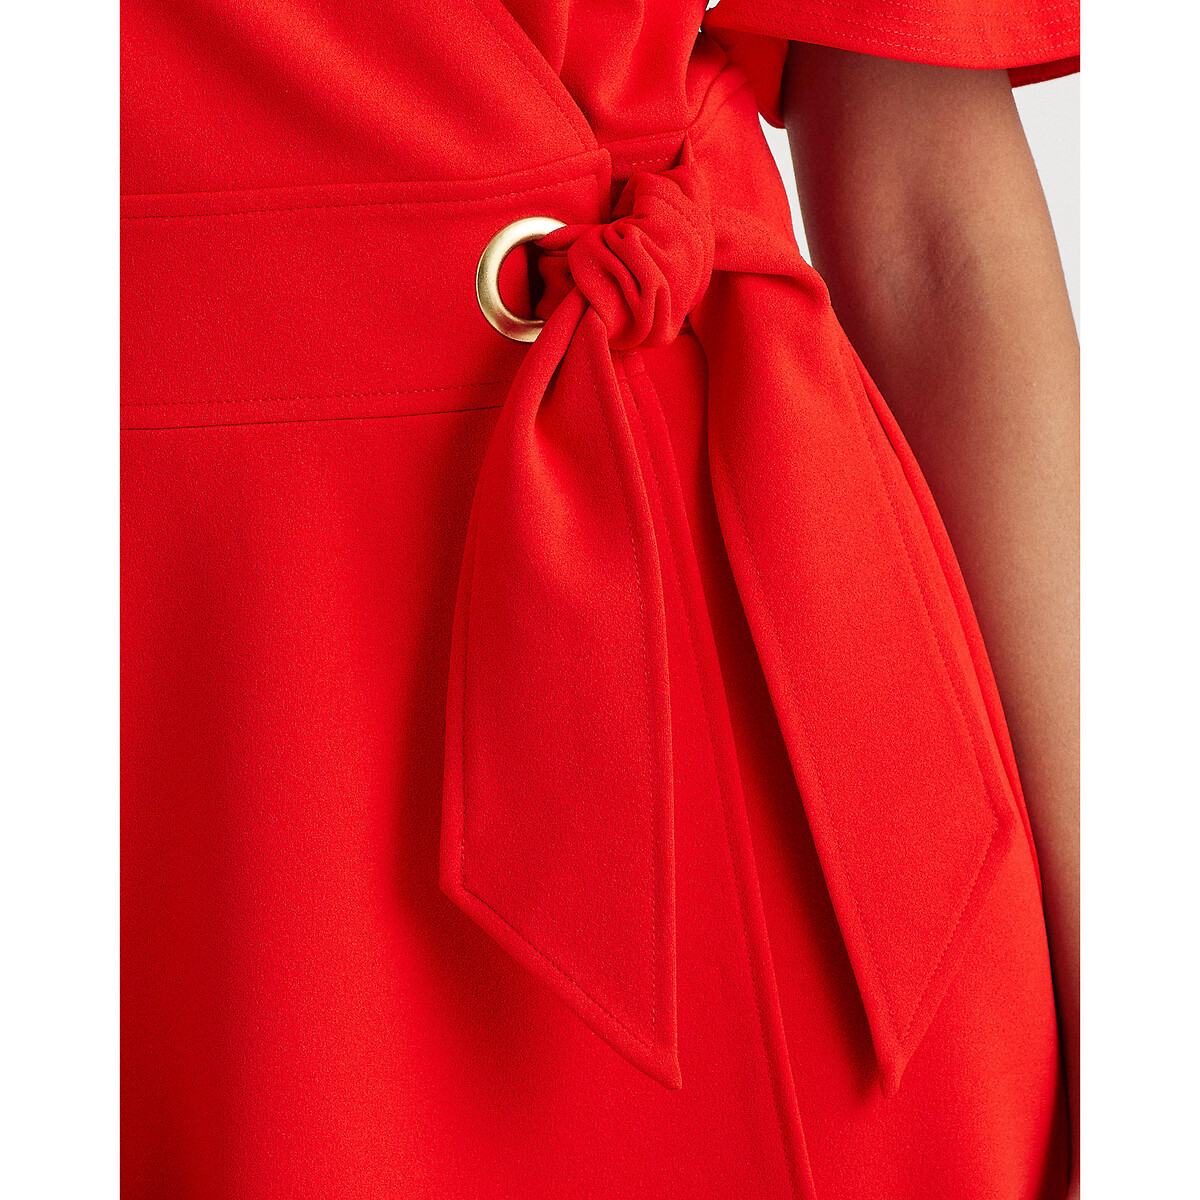 Платье LaRedoute С запахом и короткими рукавами 38 (FR) - 44 (RUS) красный, размер 38 (FR) - 44 (RUS) С запахом и короткими рукавами 38 (FR) - 44 (RUS) красный - фото 4